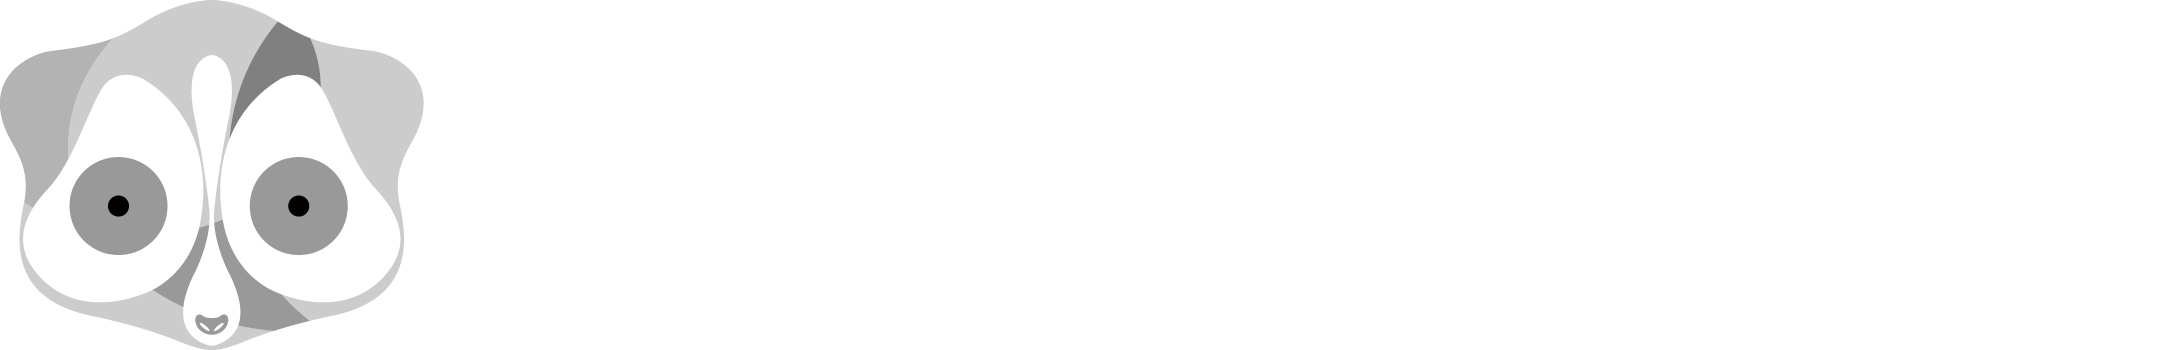 Tour operator Thailandiaweb | Koh Samet - Tour operator Thailandiaweb introduzione all'isola